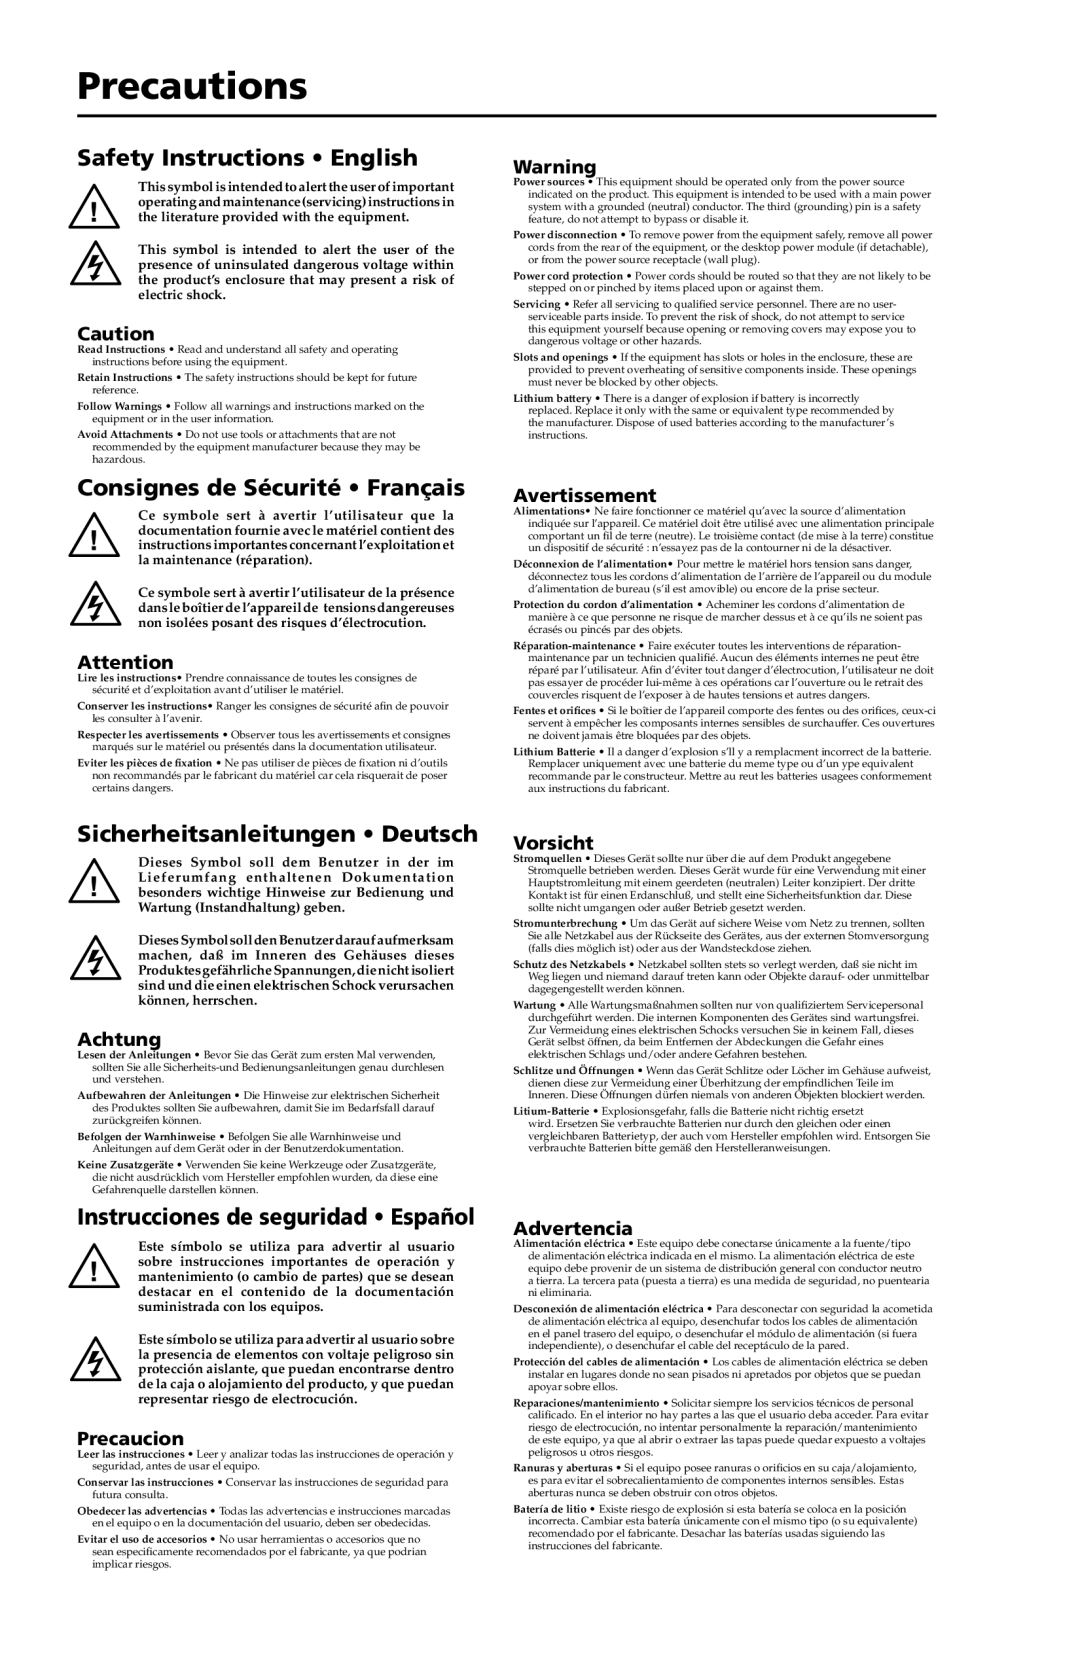 Extron electronic P/2 DA8 Precautions, Safety Instructions English, Consignes de Sécurité Français, Avertissement, Achtung 